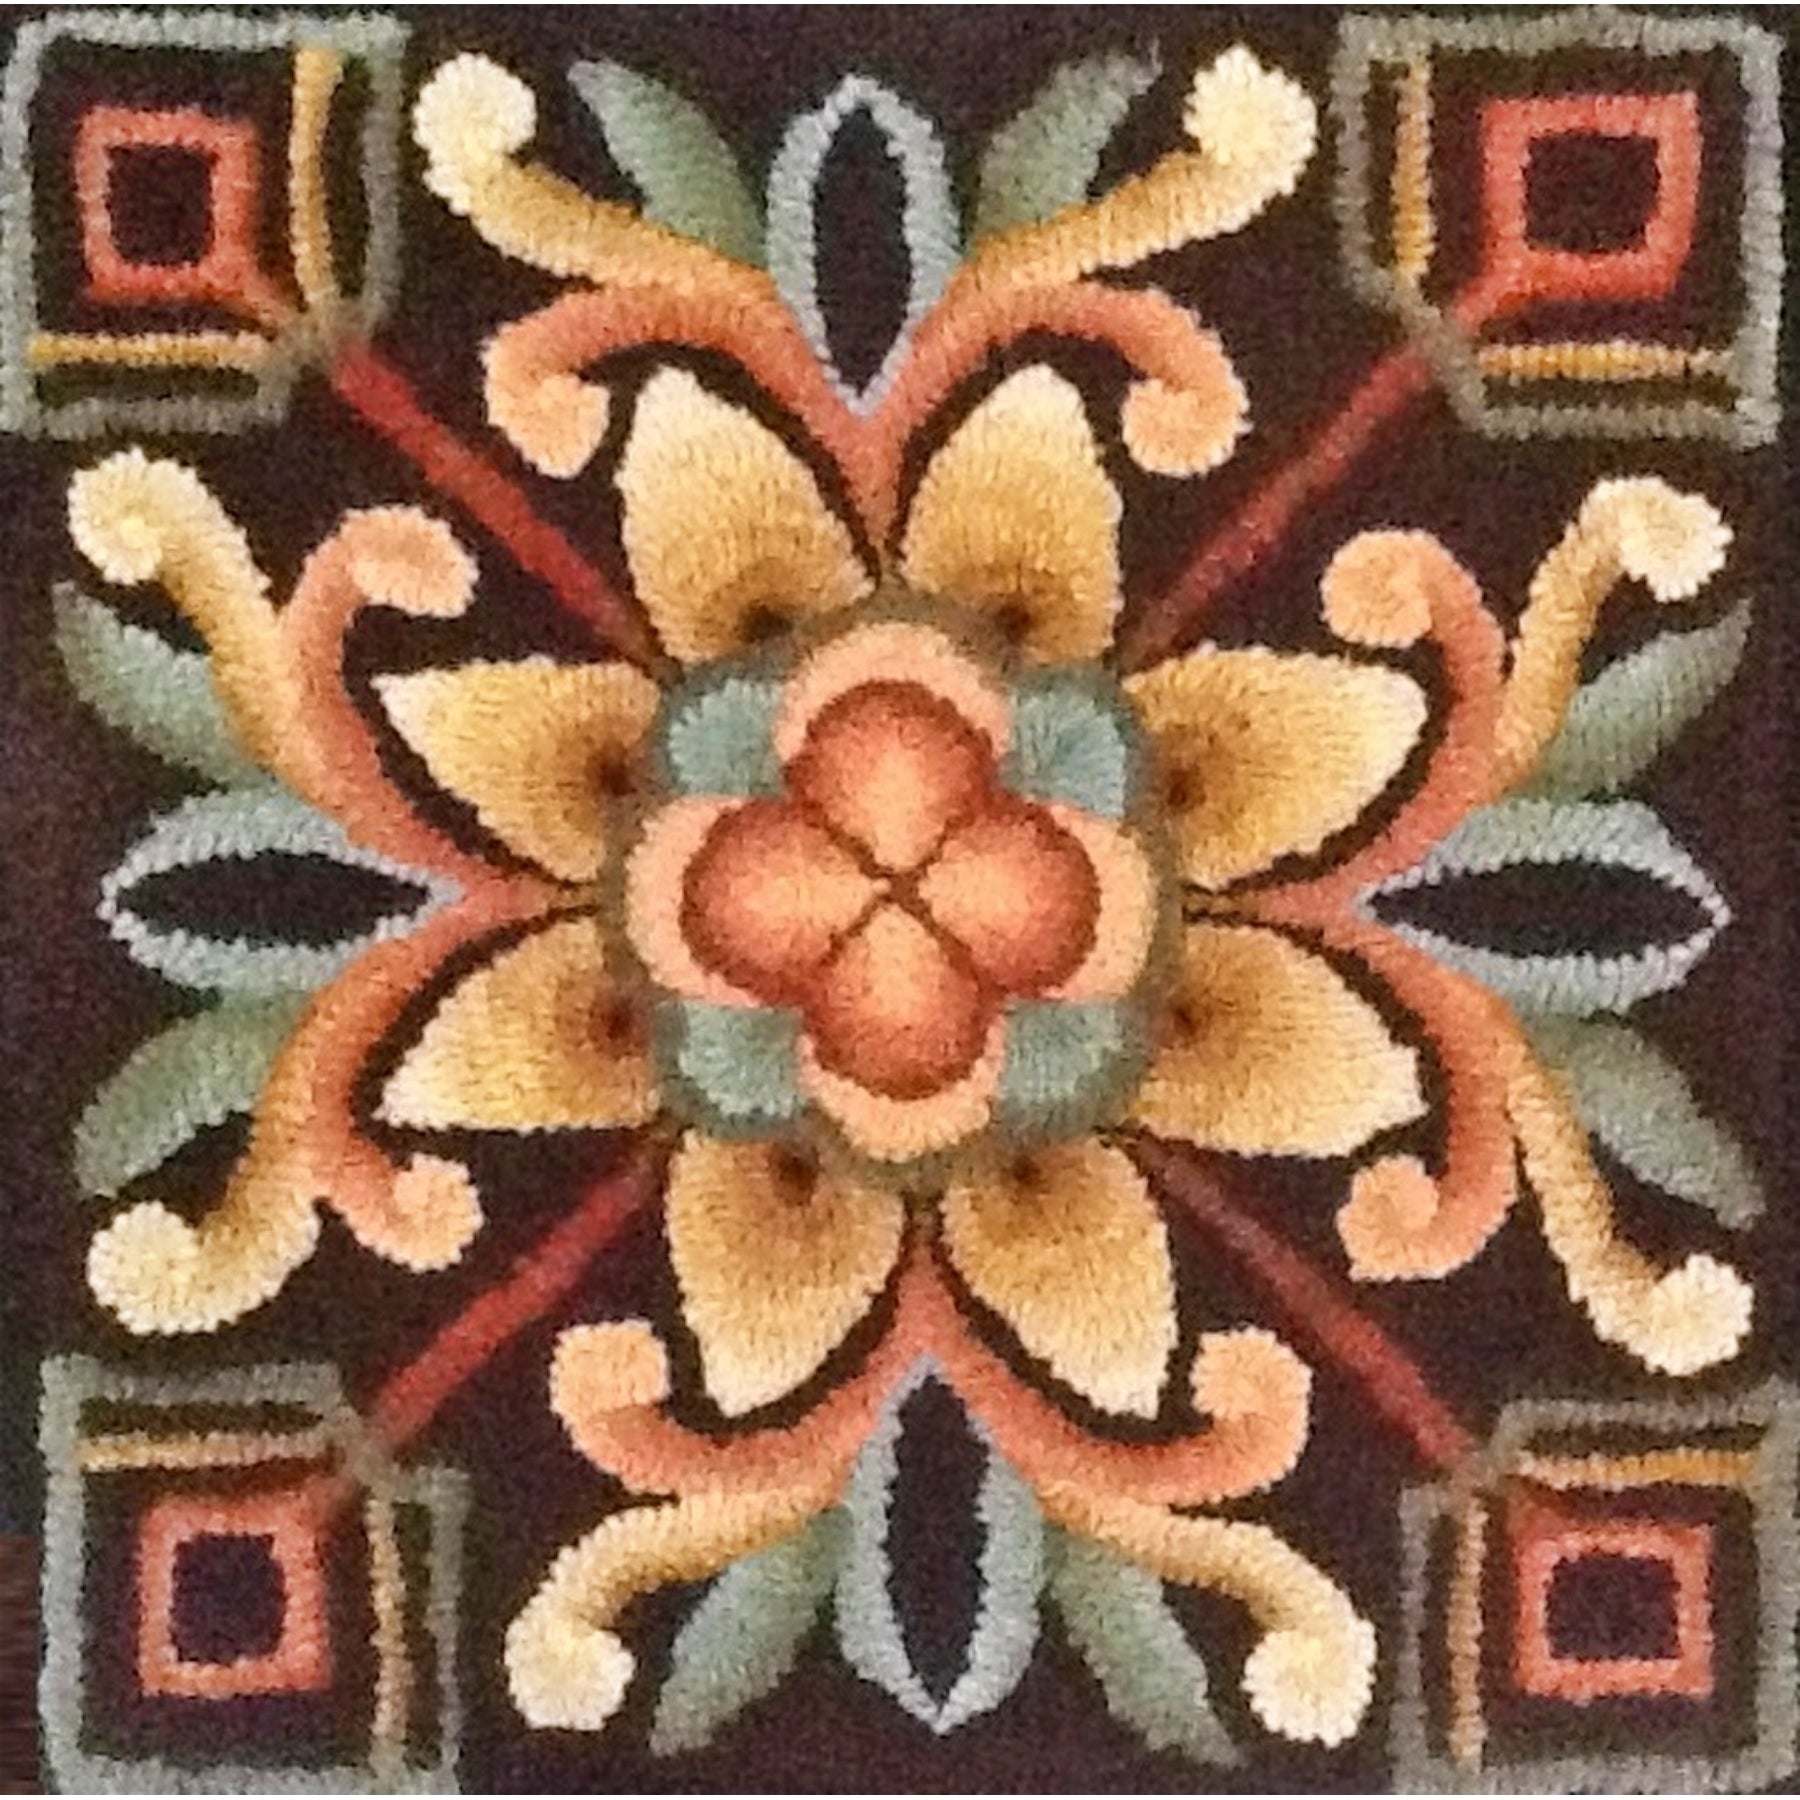 St. Augustine, rug hooked by Brenda Anderson